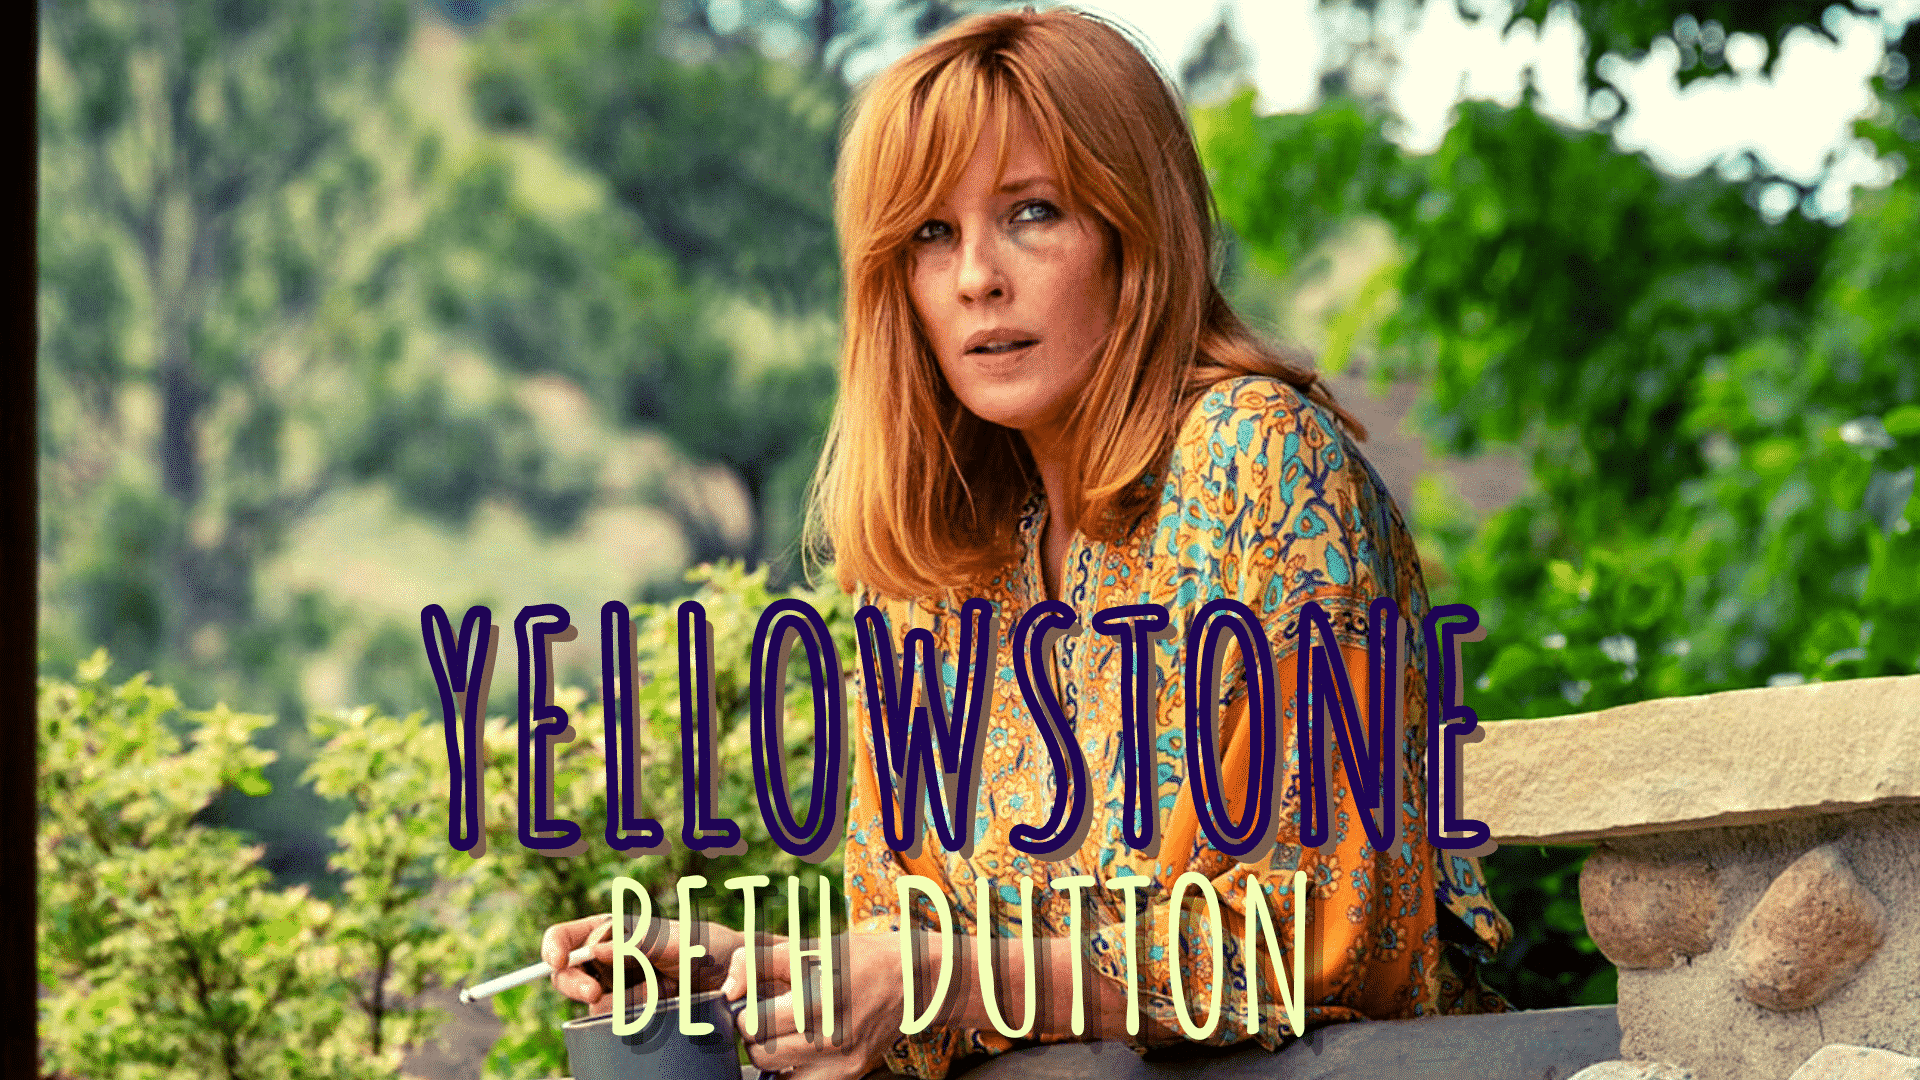 Will Yellowstone Beth Dutton die in Season 4?